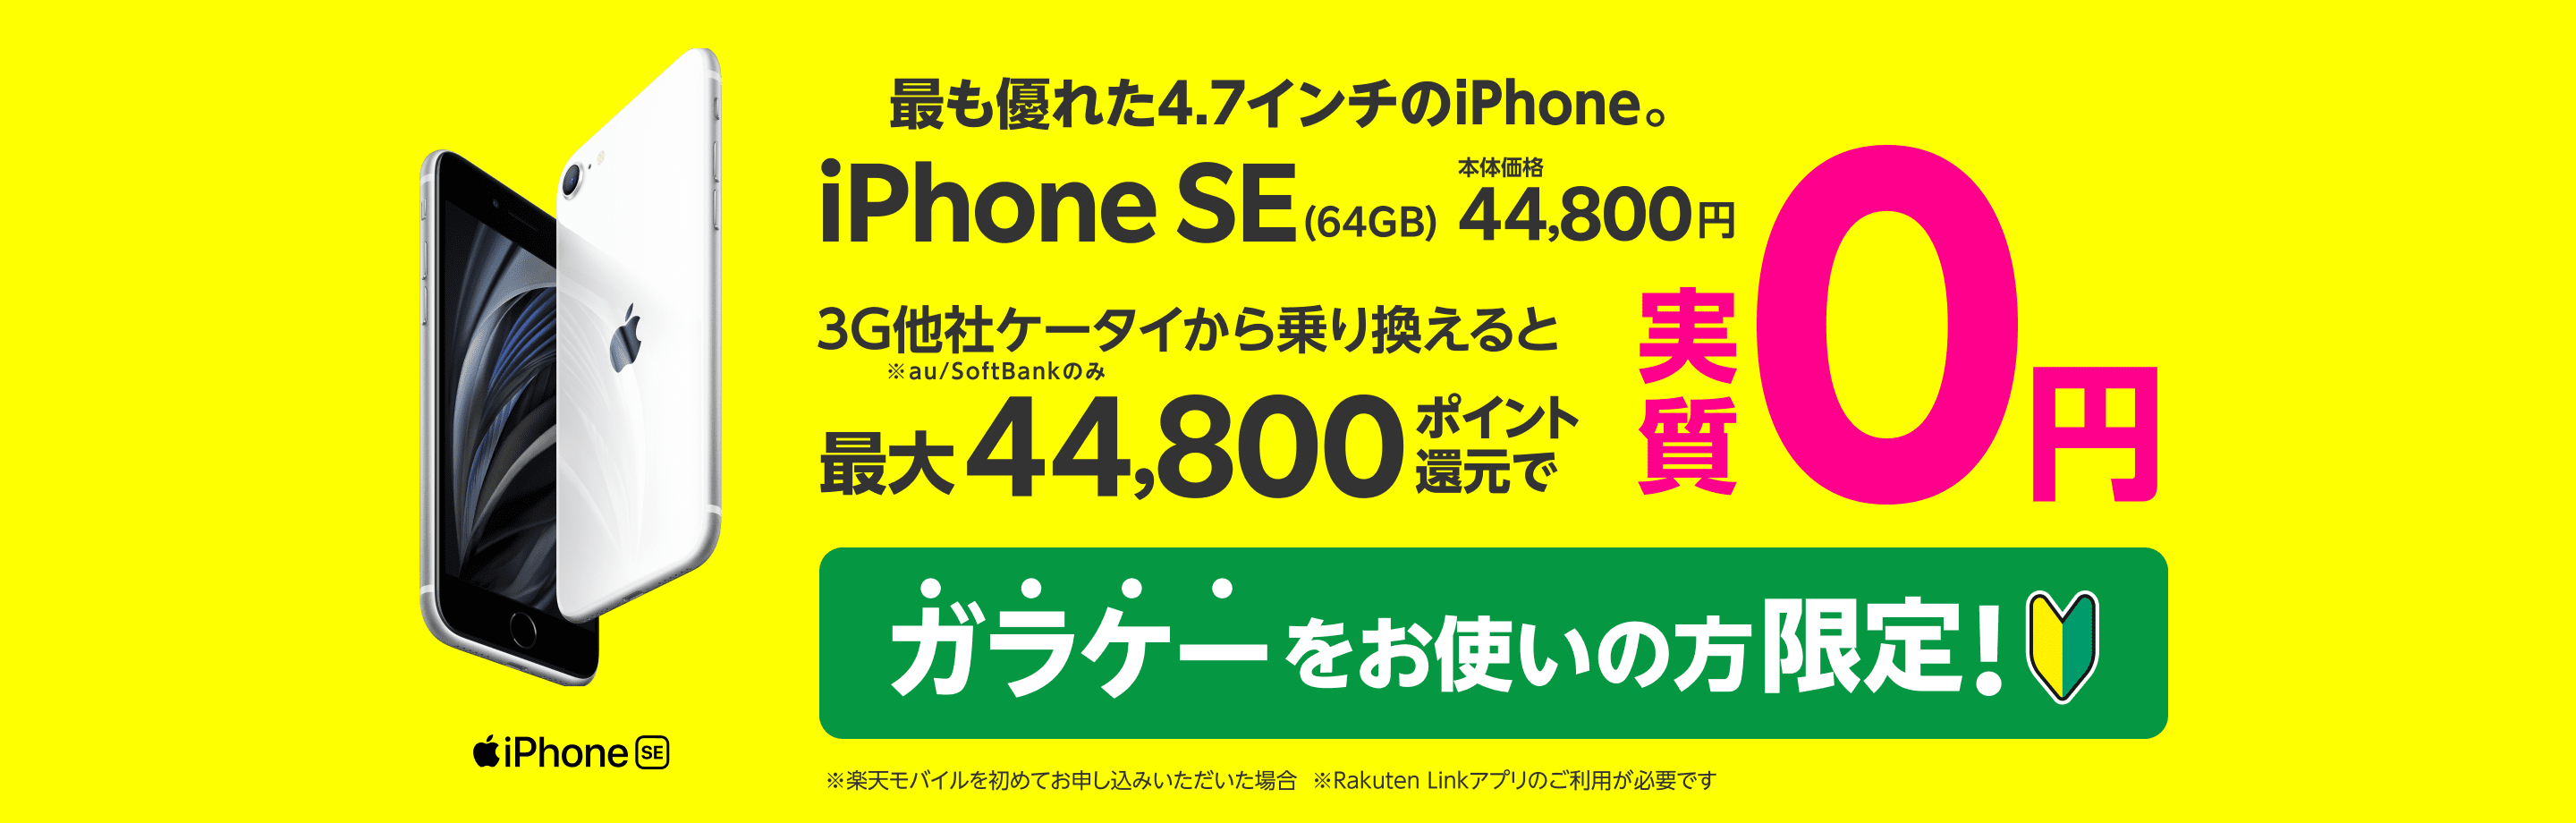 最も優れた4.7インチのiPhone。iPhone SE(64GB)本体価格44,800円　3G他社ケータイから乗り換えると最大44,800ポイント還元で実質0円　※au/SoftBankのみ　ガラケーをお使いの方限定！※楽天モバイルを初めてお申し込みいただいた場合 ※Rakuten Linkアプリのご利用が必要です